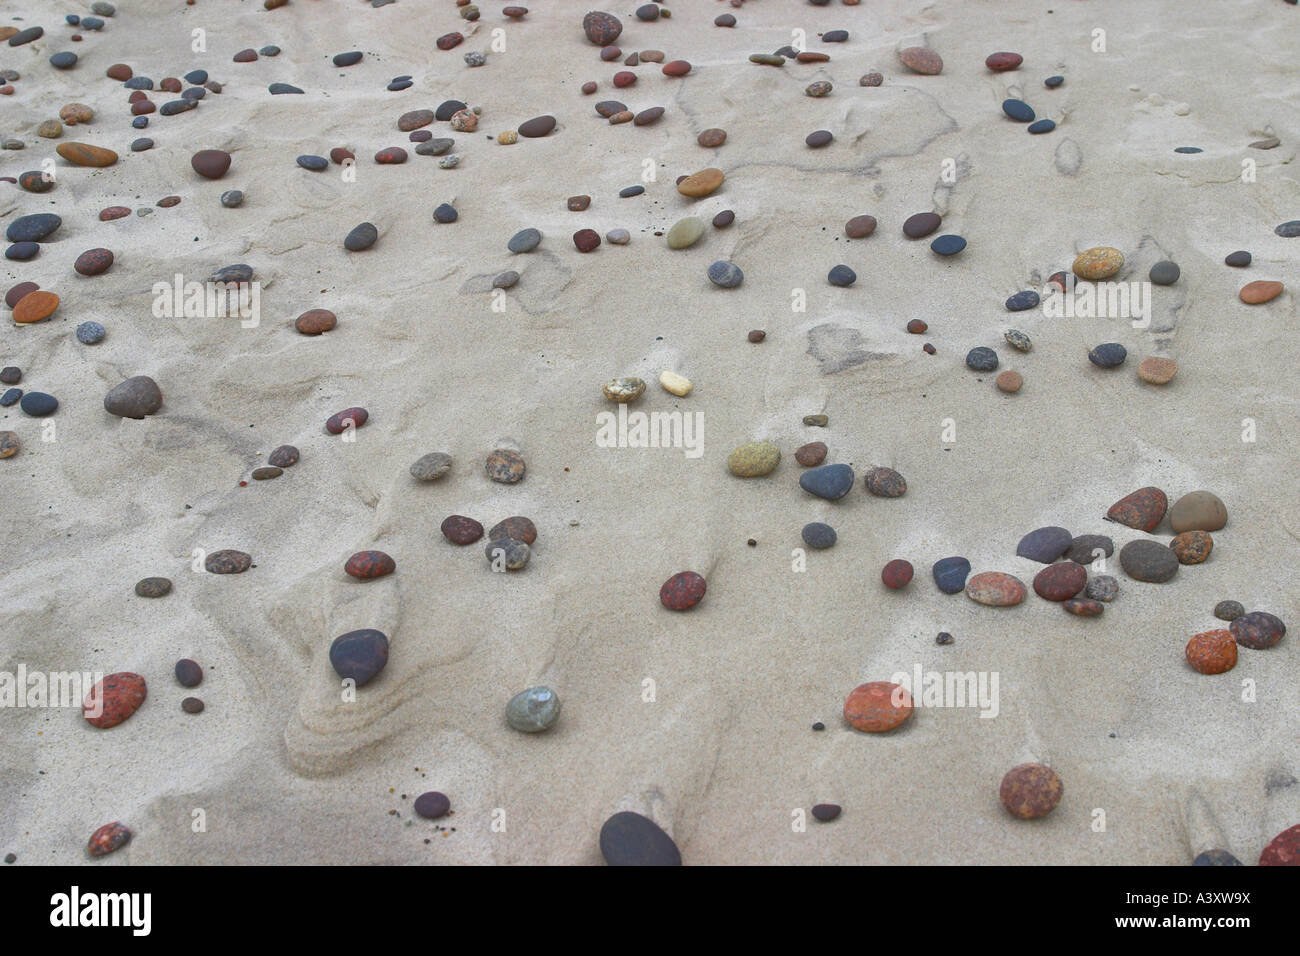 Pebbles on sandy beach Banque D'Images